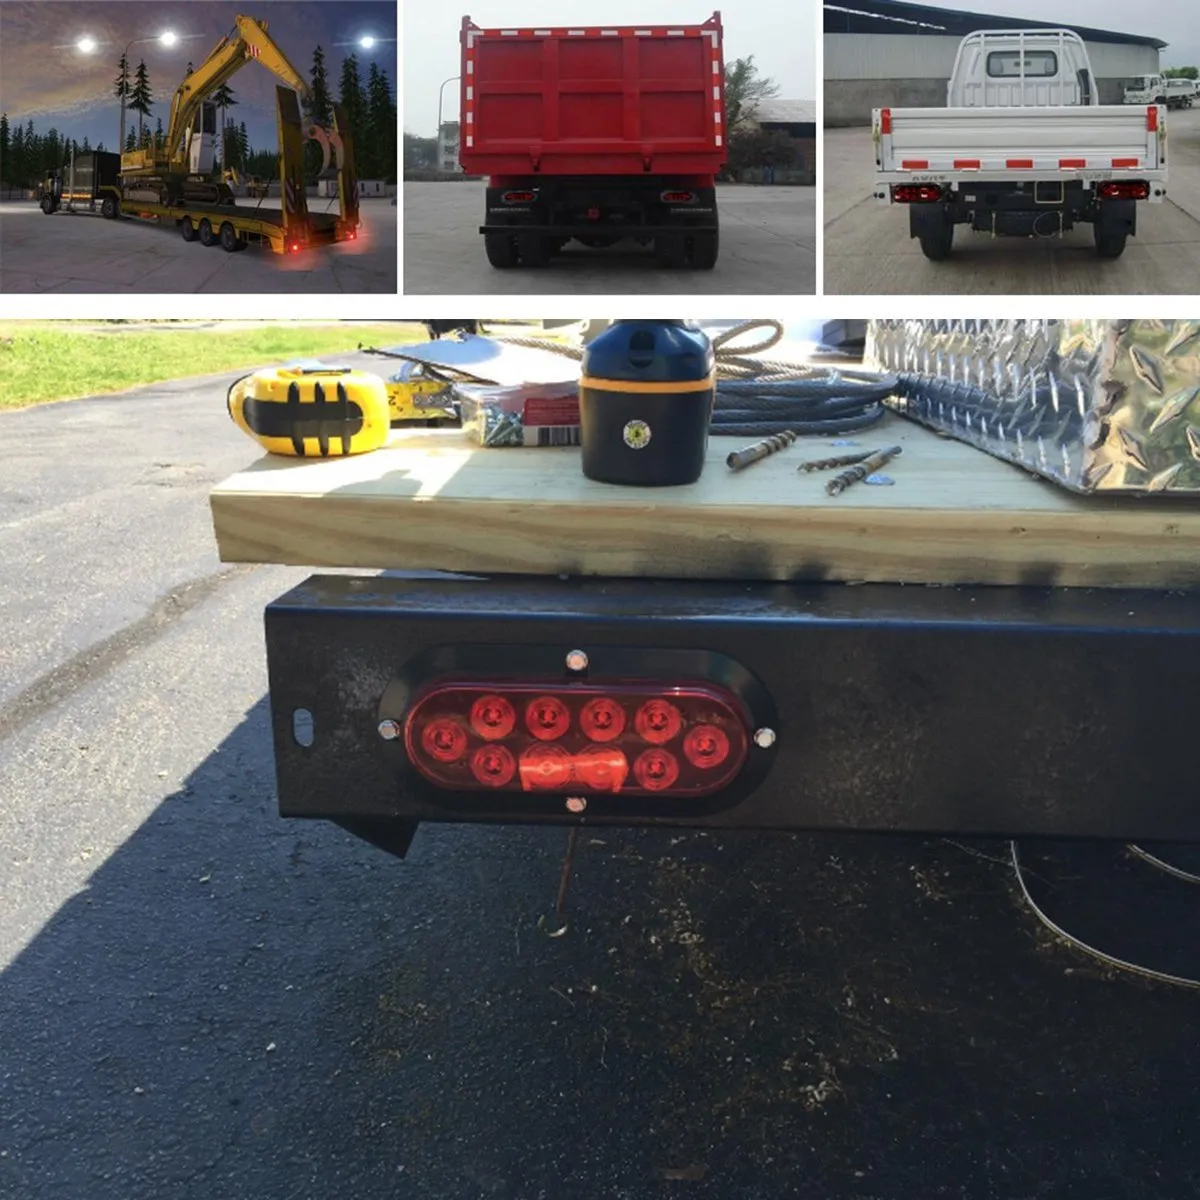 6039039 Röd LED -bakljusfuktion som bromsljus Turn Signljus IP65 Vattentät 12V för lastbilsvagn Båt5751308